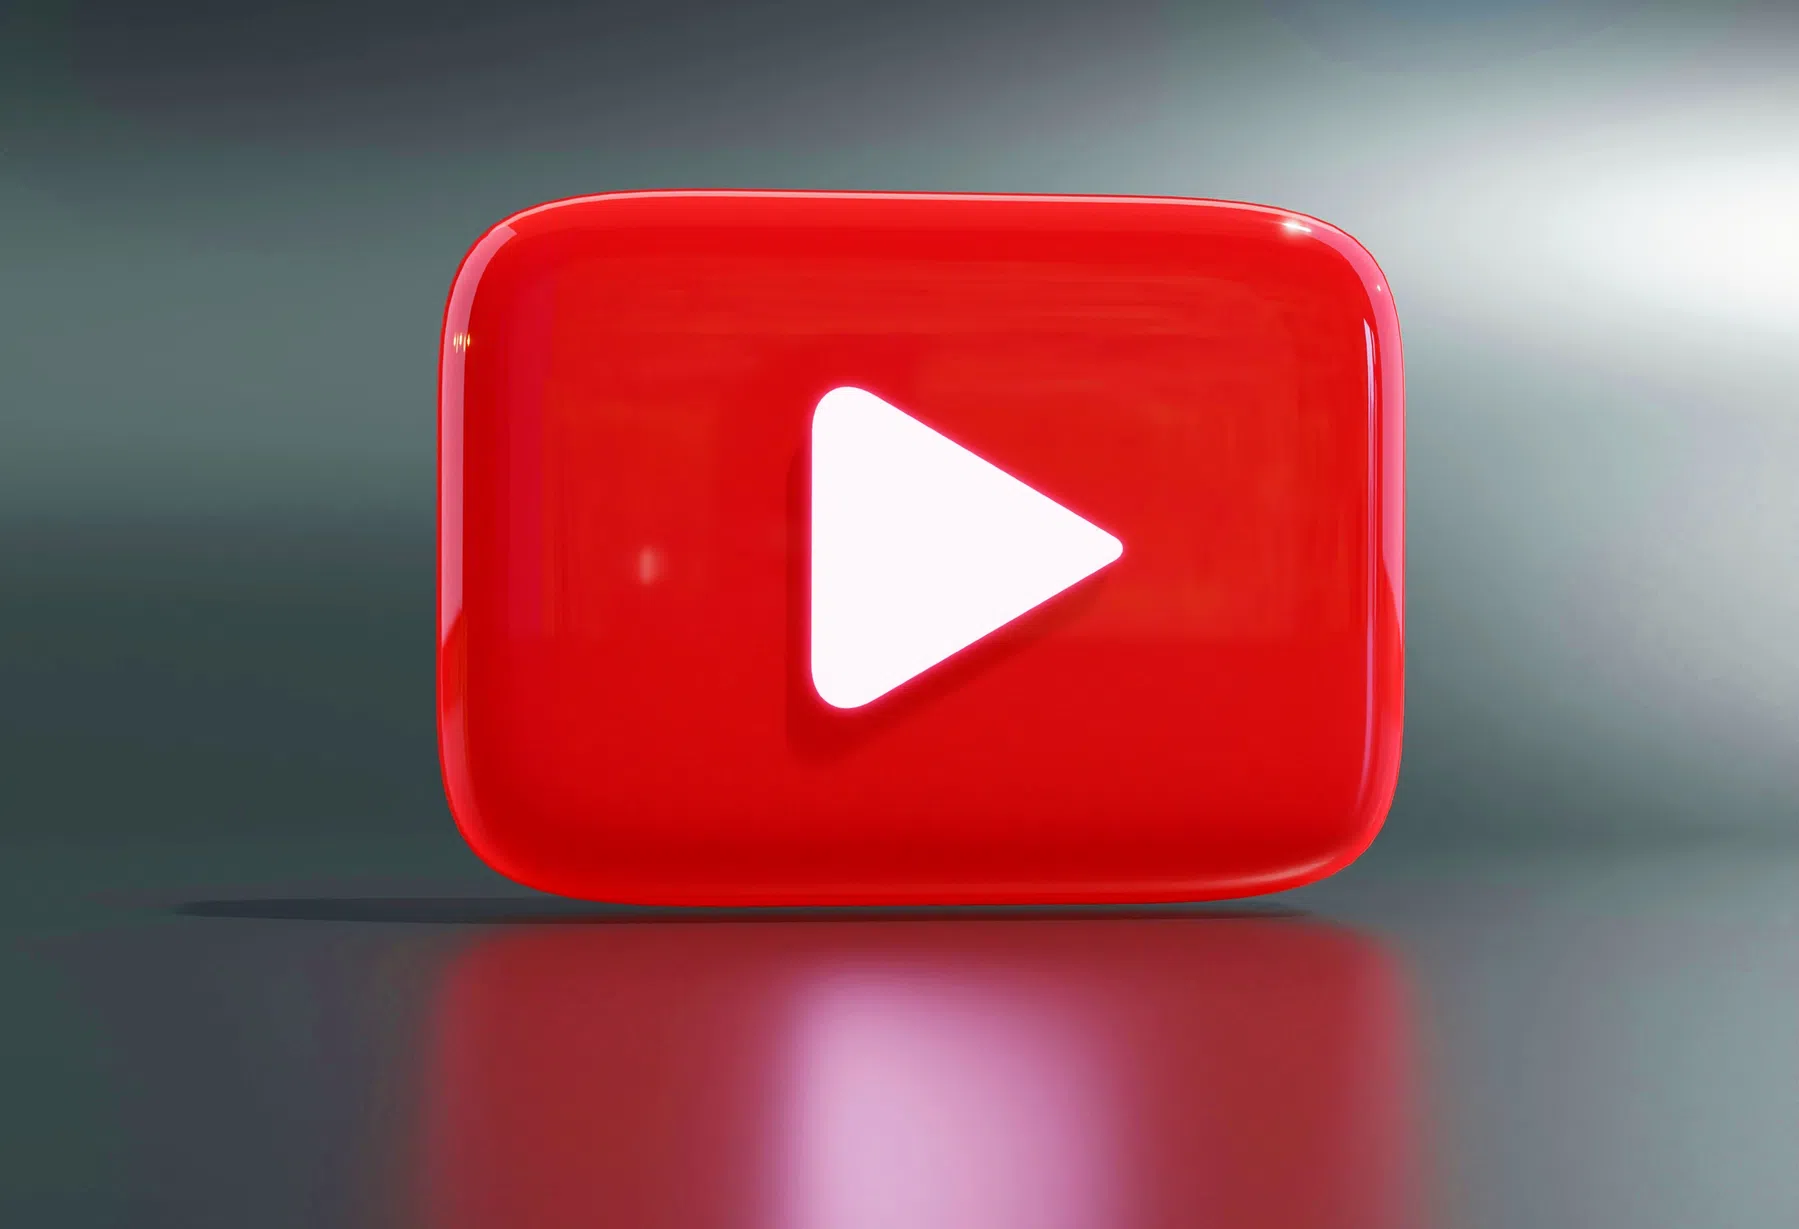 YouTube test een andere lay-out en gebruikers vinden het vreselijk